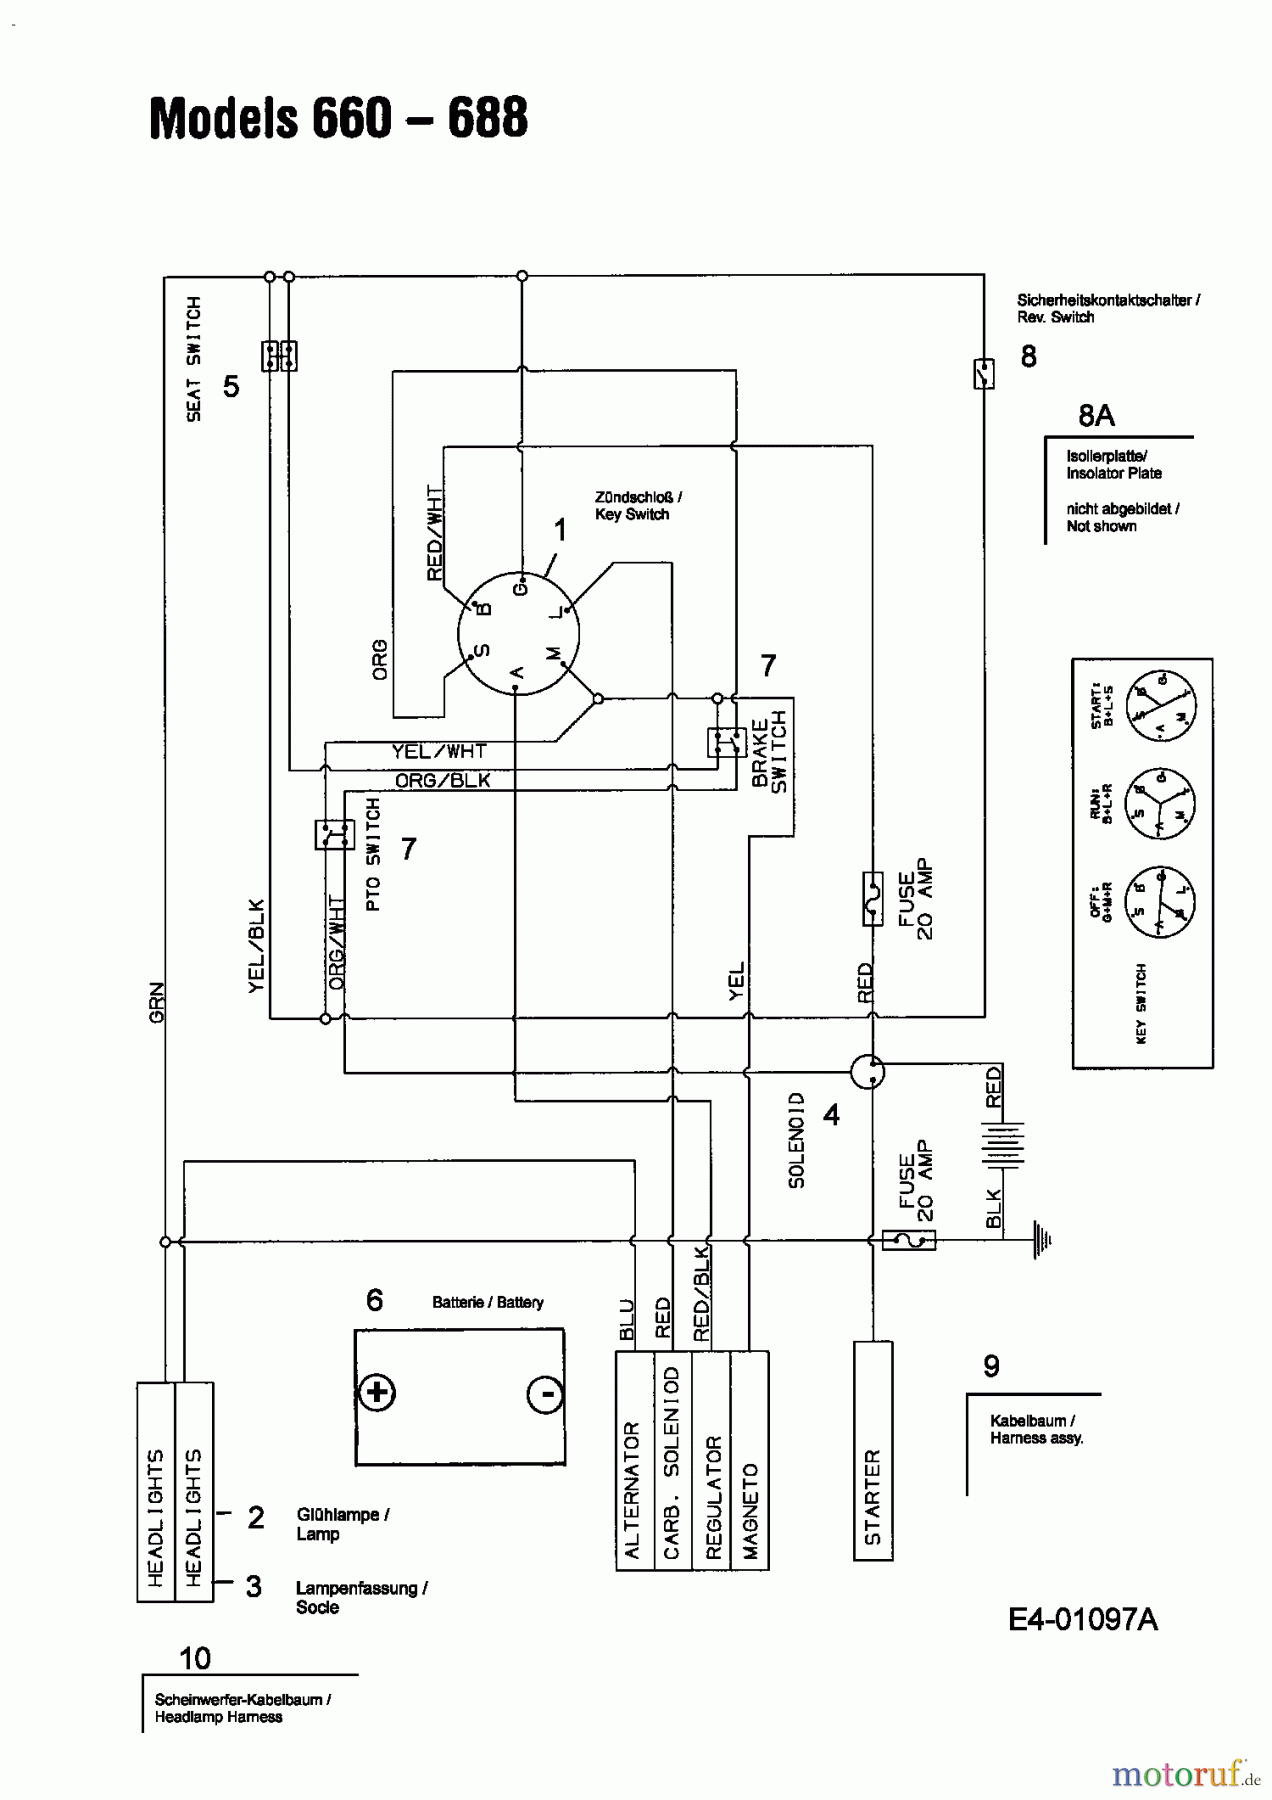  MTD untill 2011 Lawn tractors B 135 13BA668F678  (2004) Wiring diagram